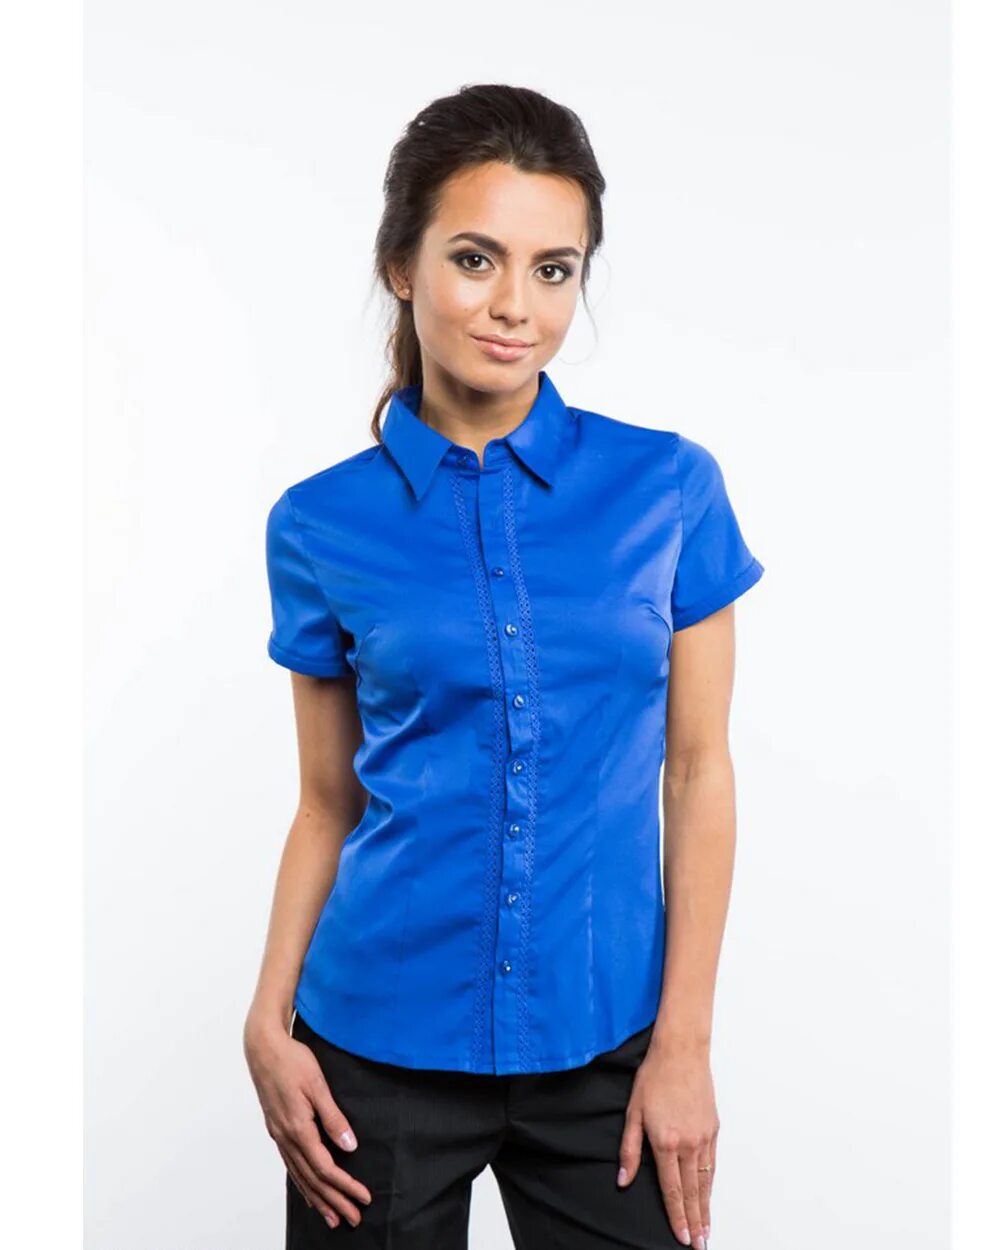 Синяя рубашка женская. Блузка с коротким рукавом. Блузка женская с коротким рукавом. Рубашка с коротким рукавом женская. 44 размер блузки